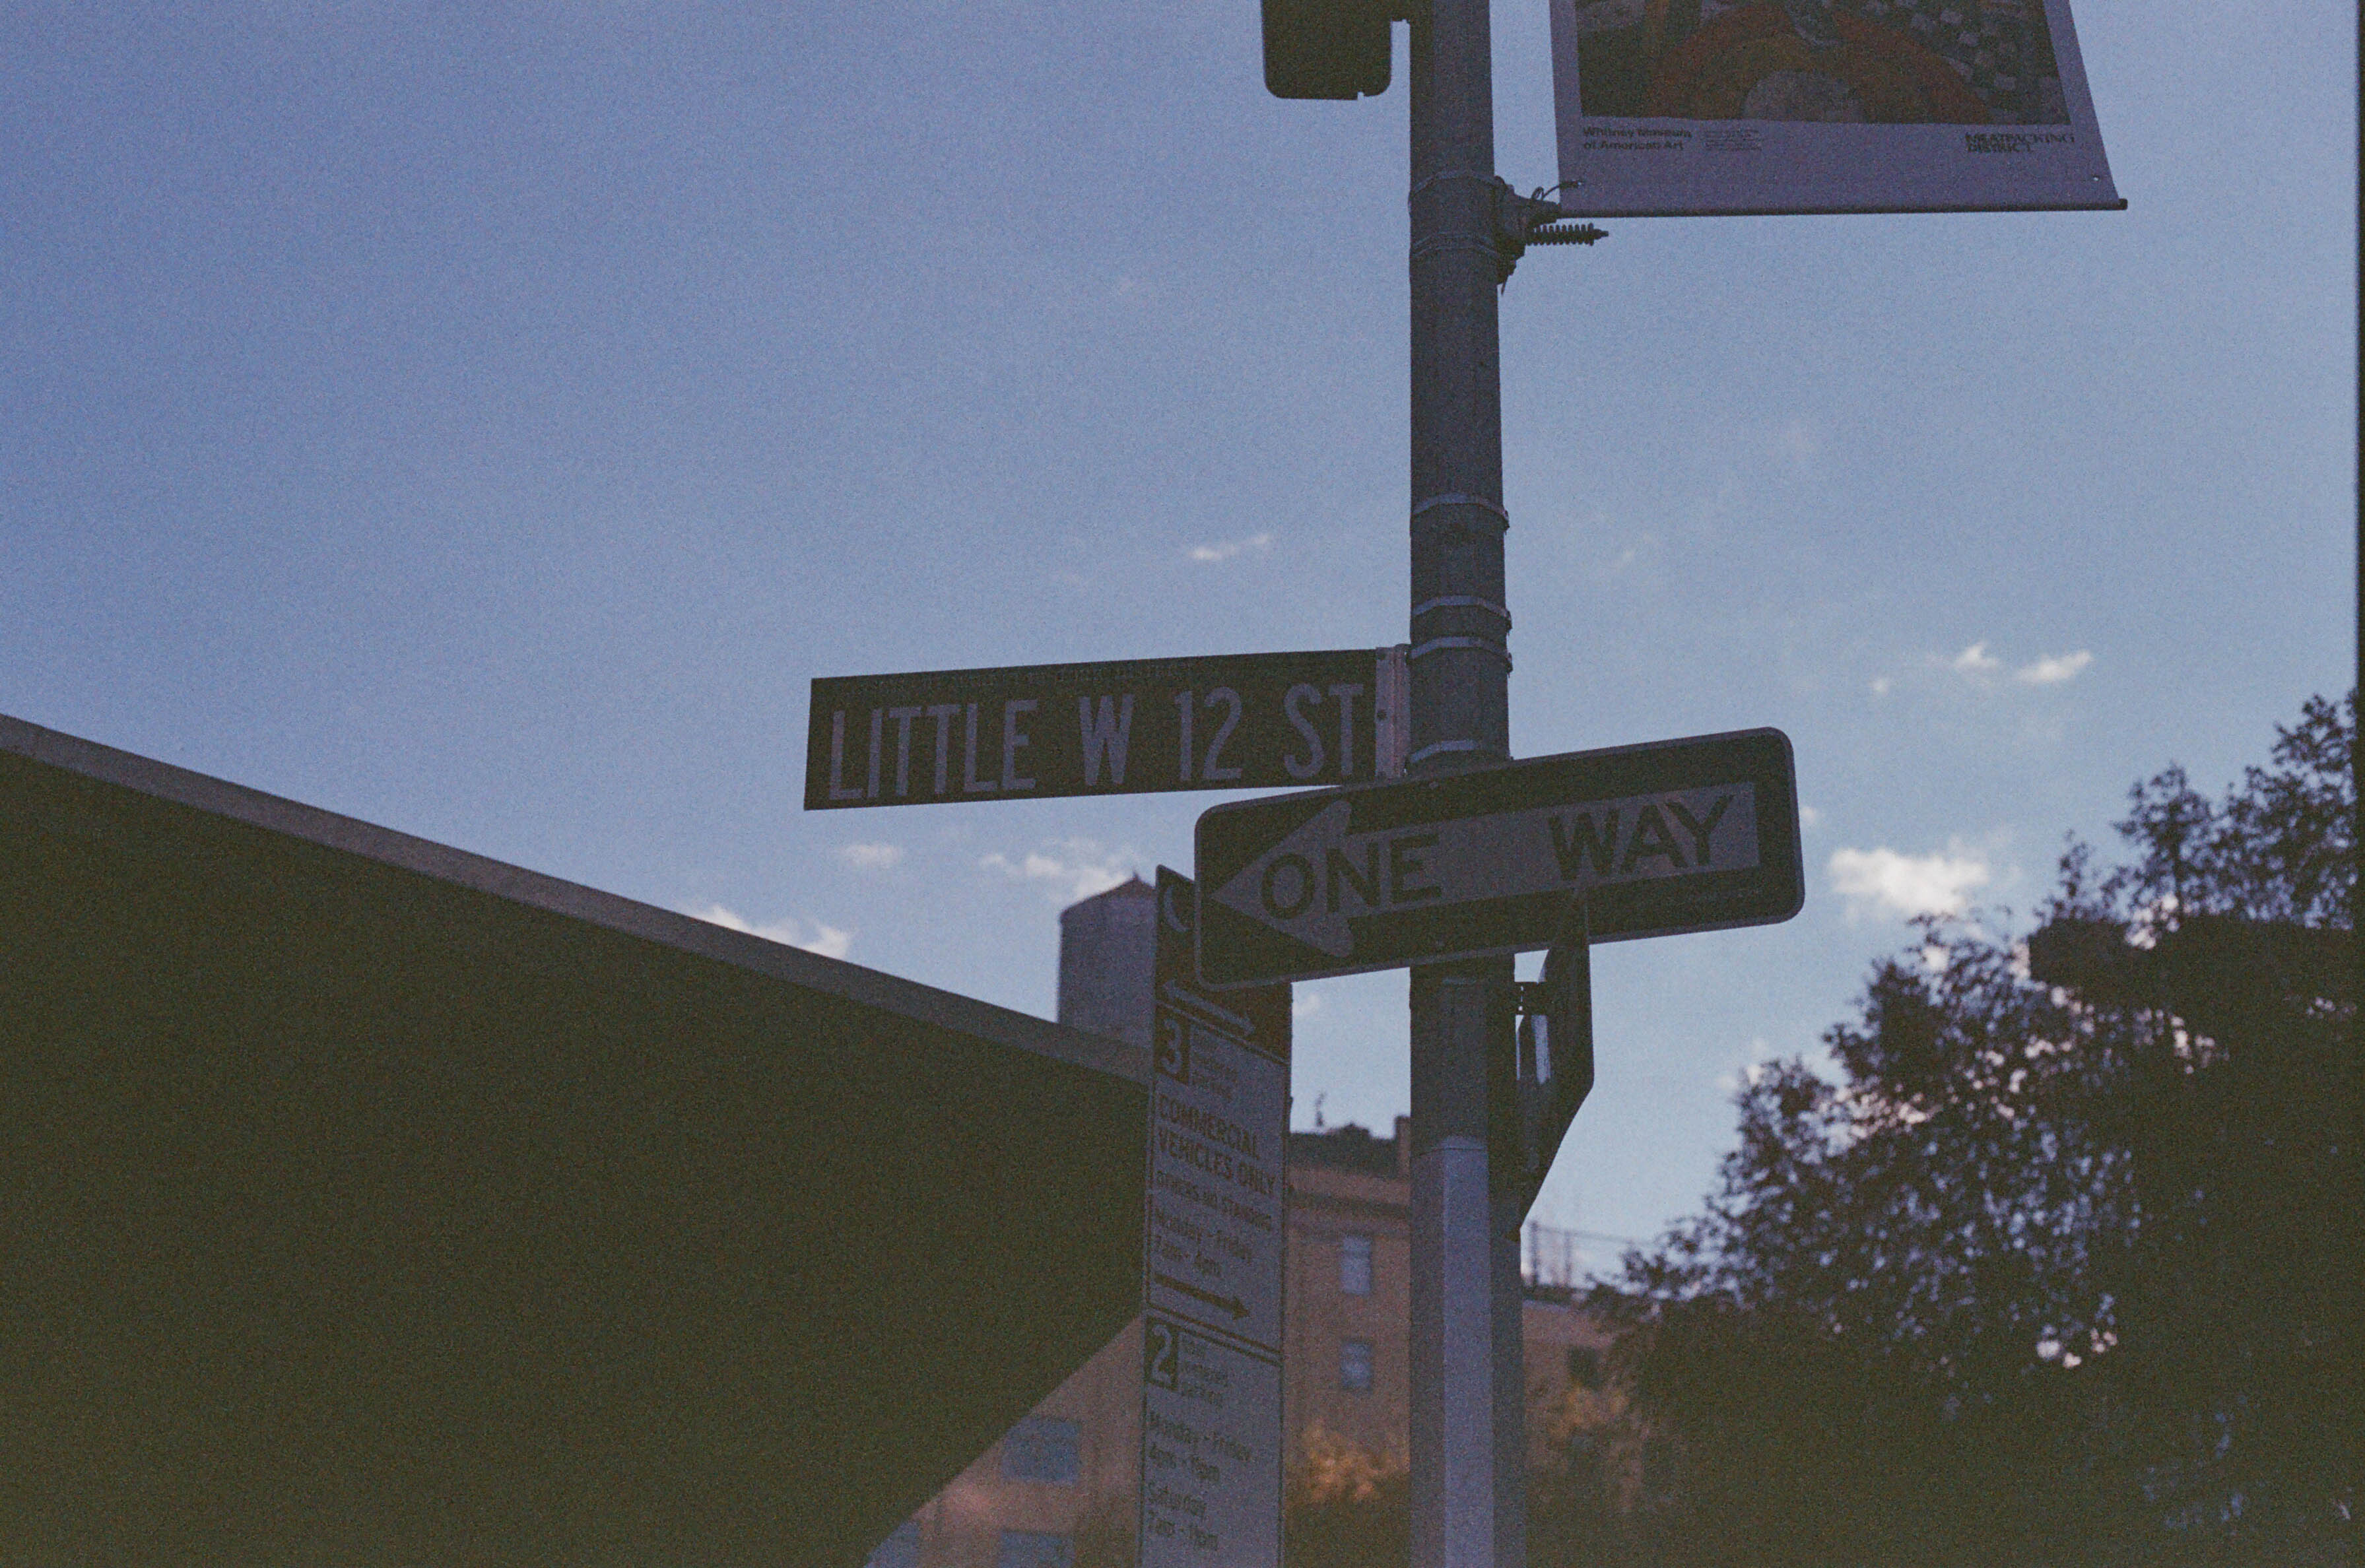 LITTLE W 12 ST
 - Little West 12 Street, NYC